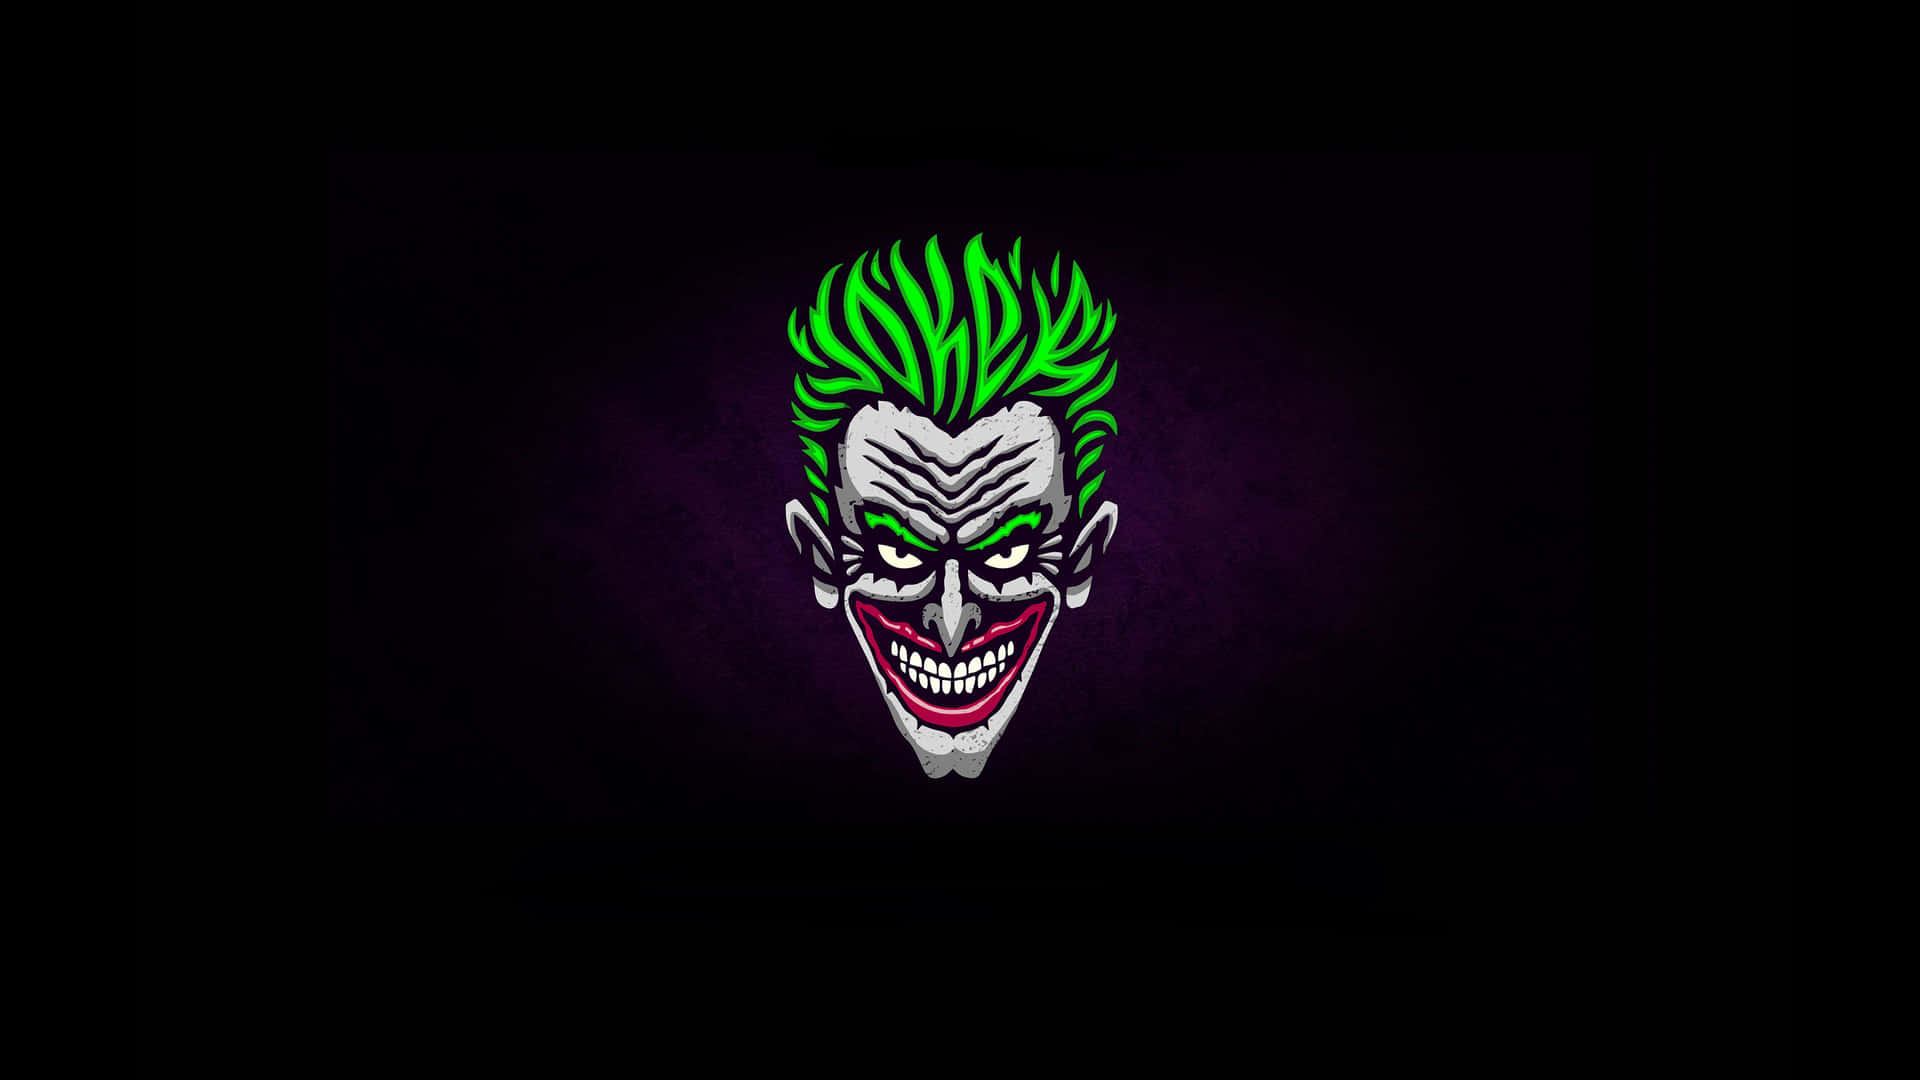 Obrade Arte Vibrante Del Joker Sobre Un Fondo Oscuro Fondo de pantalla